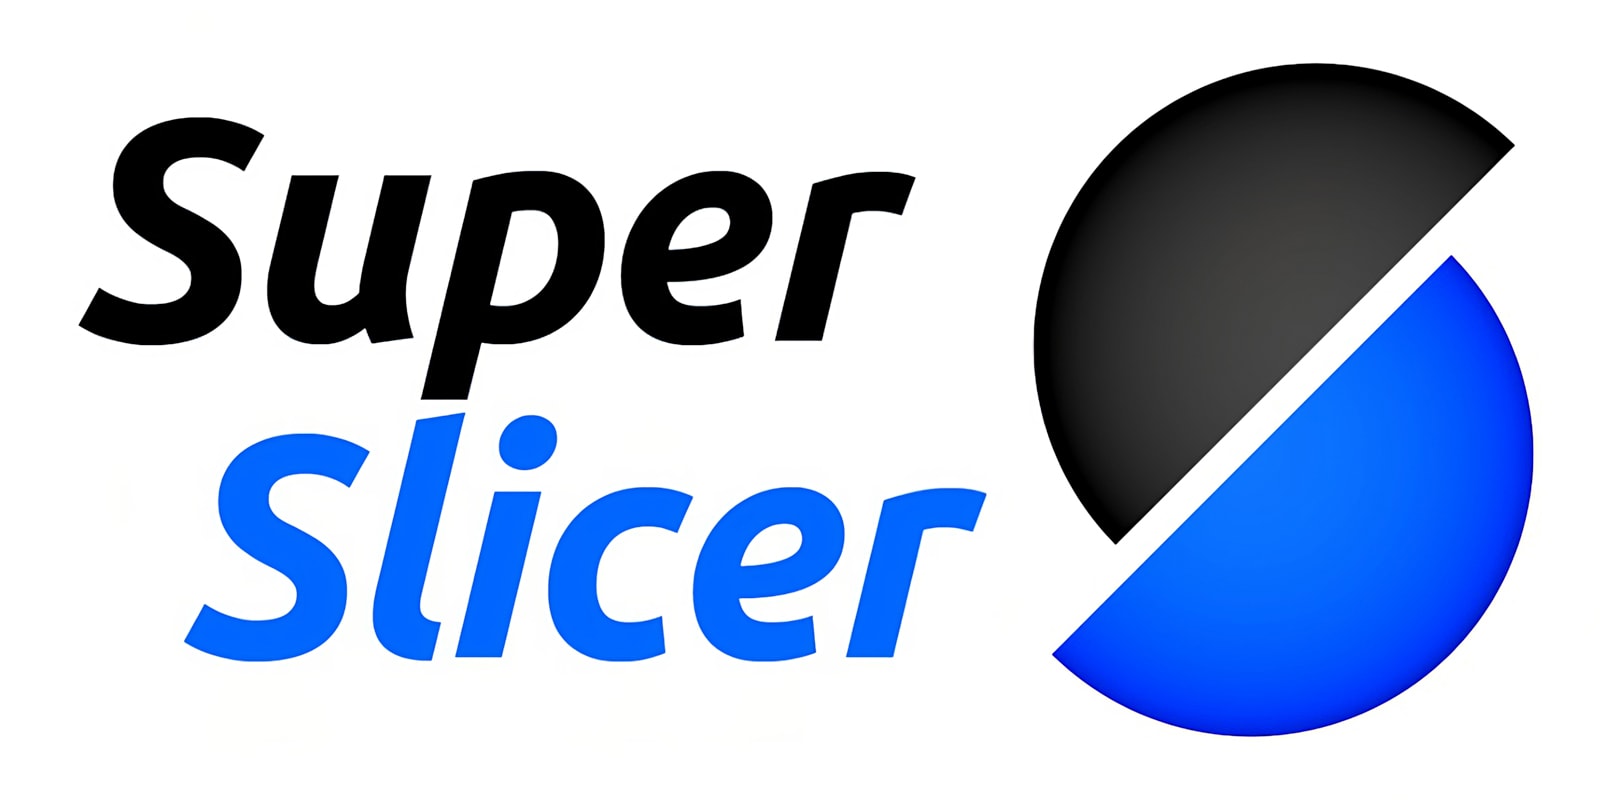 SuperSlicer software for 3D printing